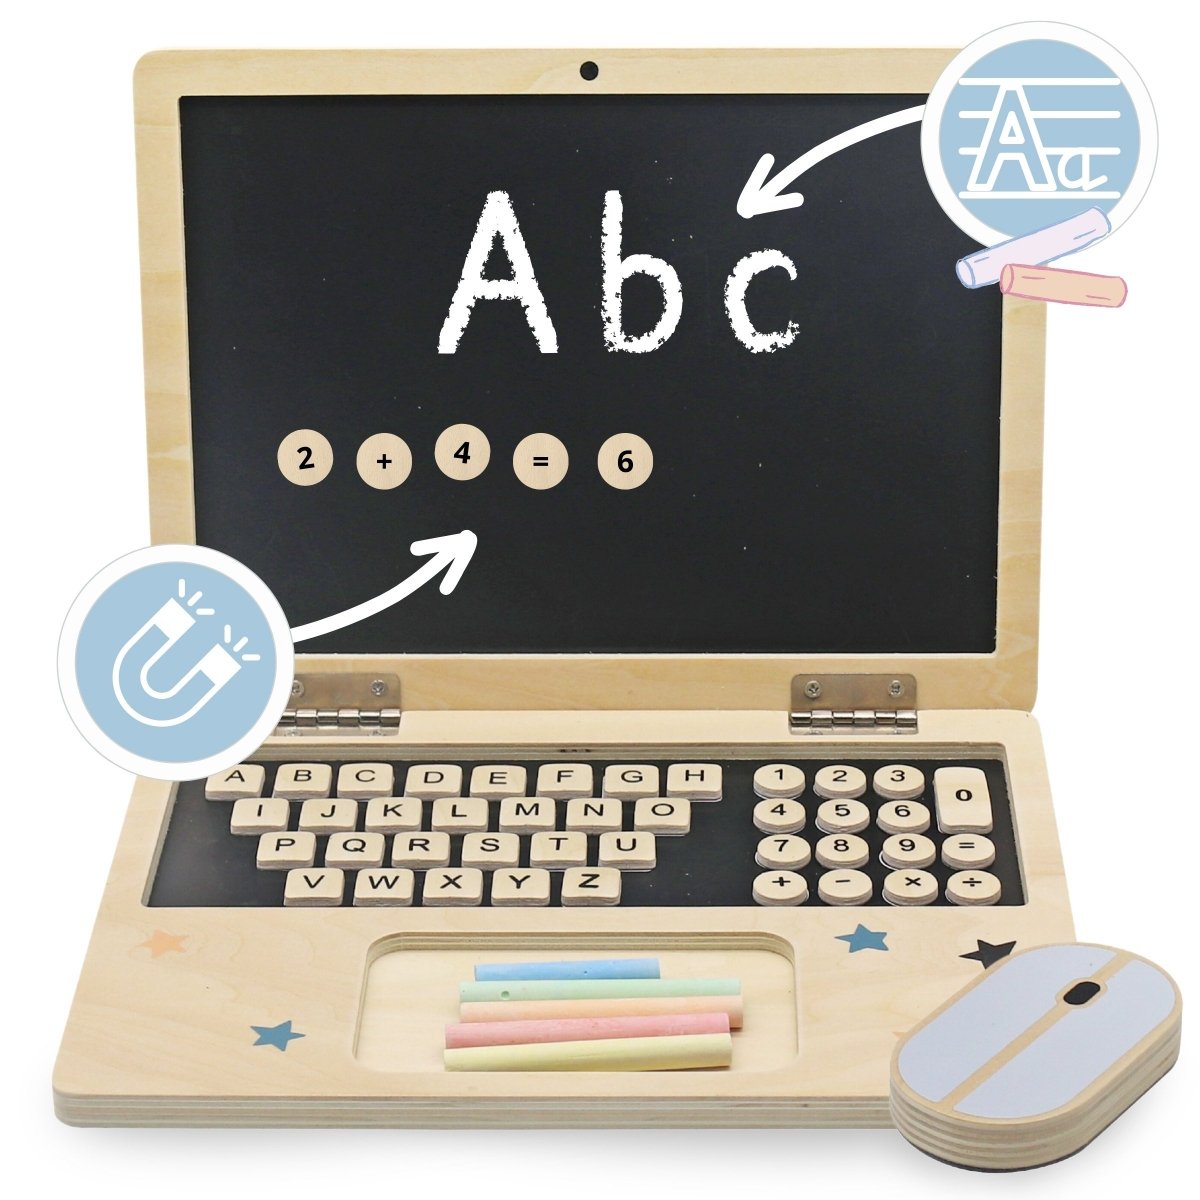 Drewniany laptop z myszką - tablica magnetyczna + kredowa